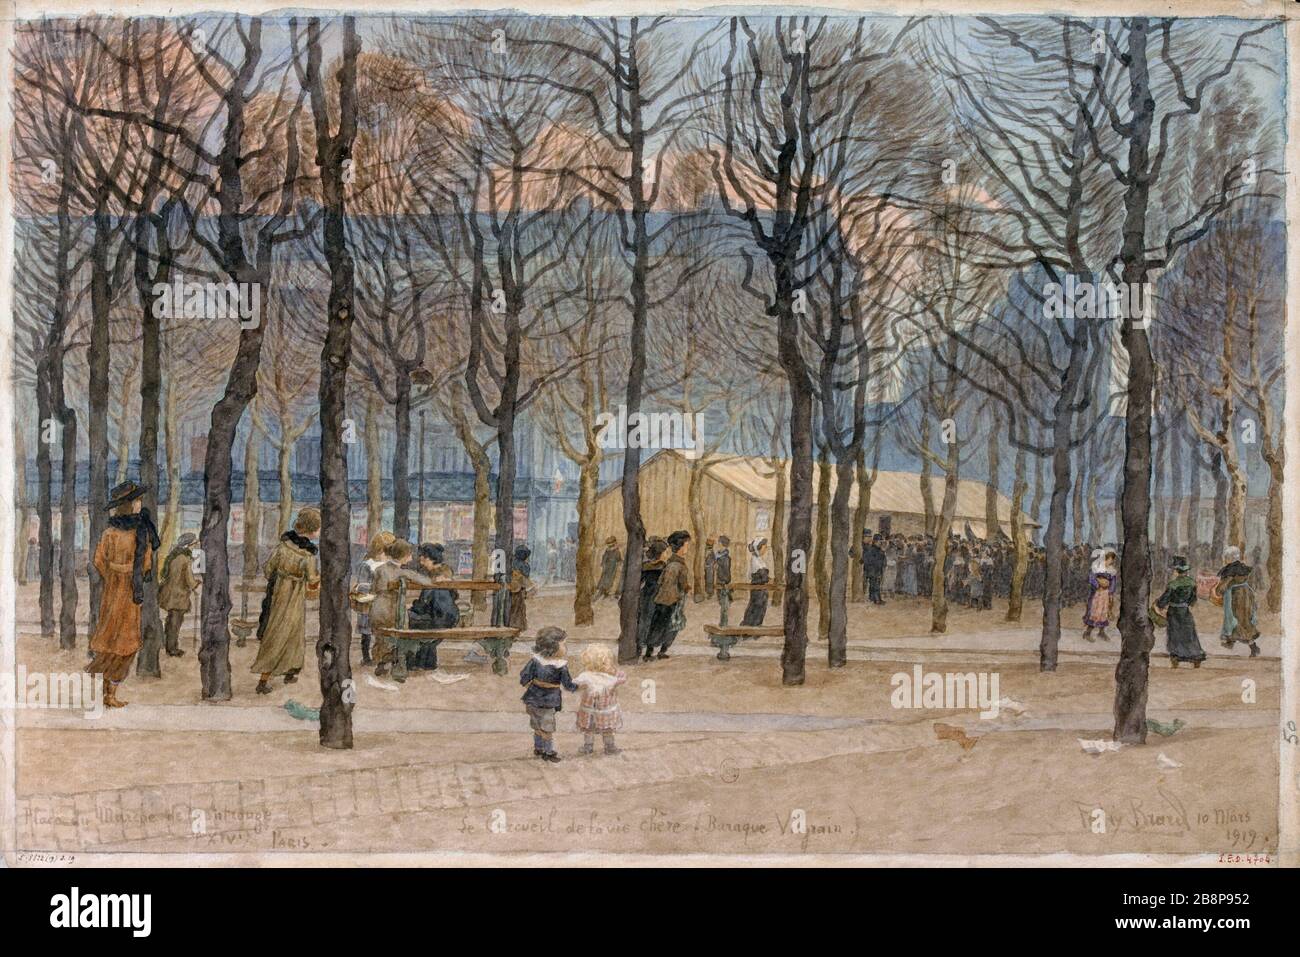 Market Square Montrouge - The coffin dear life (Vilgrain shack) Félix Brard. 'Place du marché de Montrouge - Le cercueil de la vie chère (baraque Vilgrain)'. Dessin, 10 mars 1919. Paris, musée Carnavalet. Stock Photo